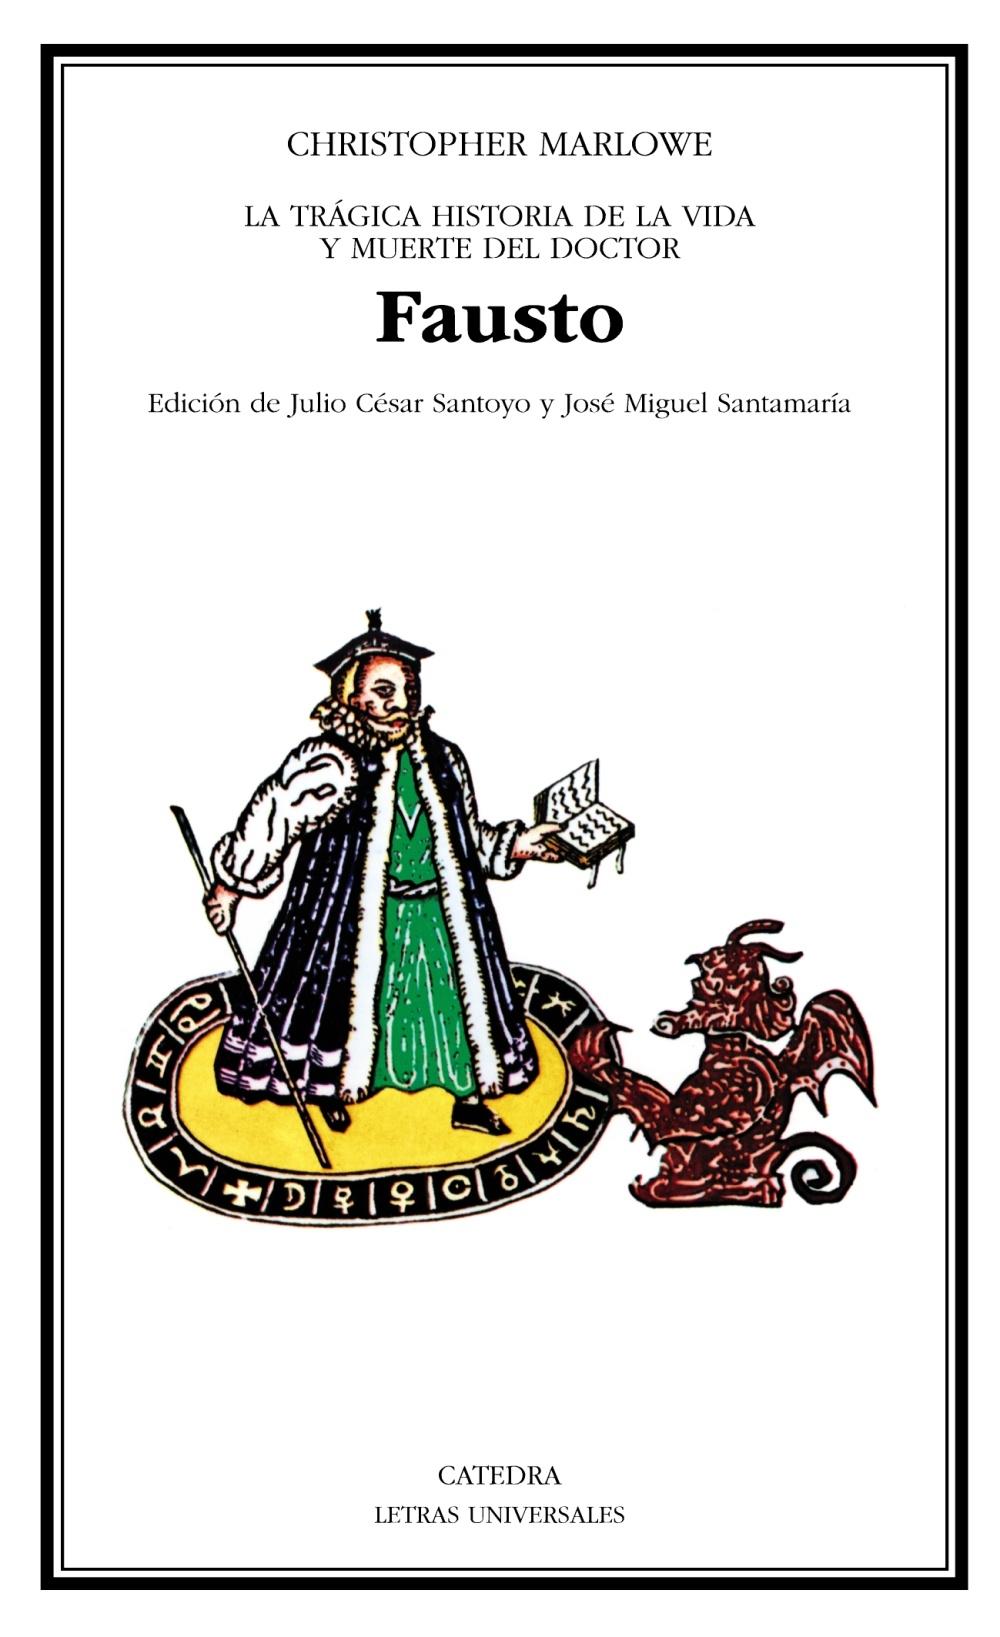 Fausto "La trágica historia de la vida y muerte del doctor Fausto"